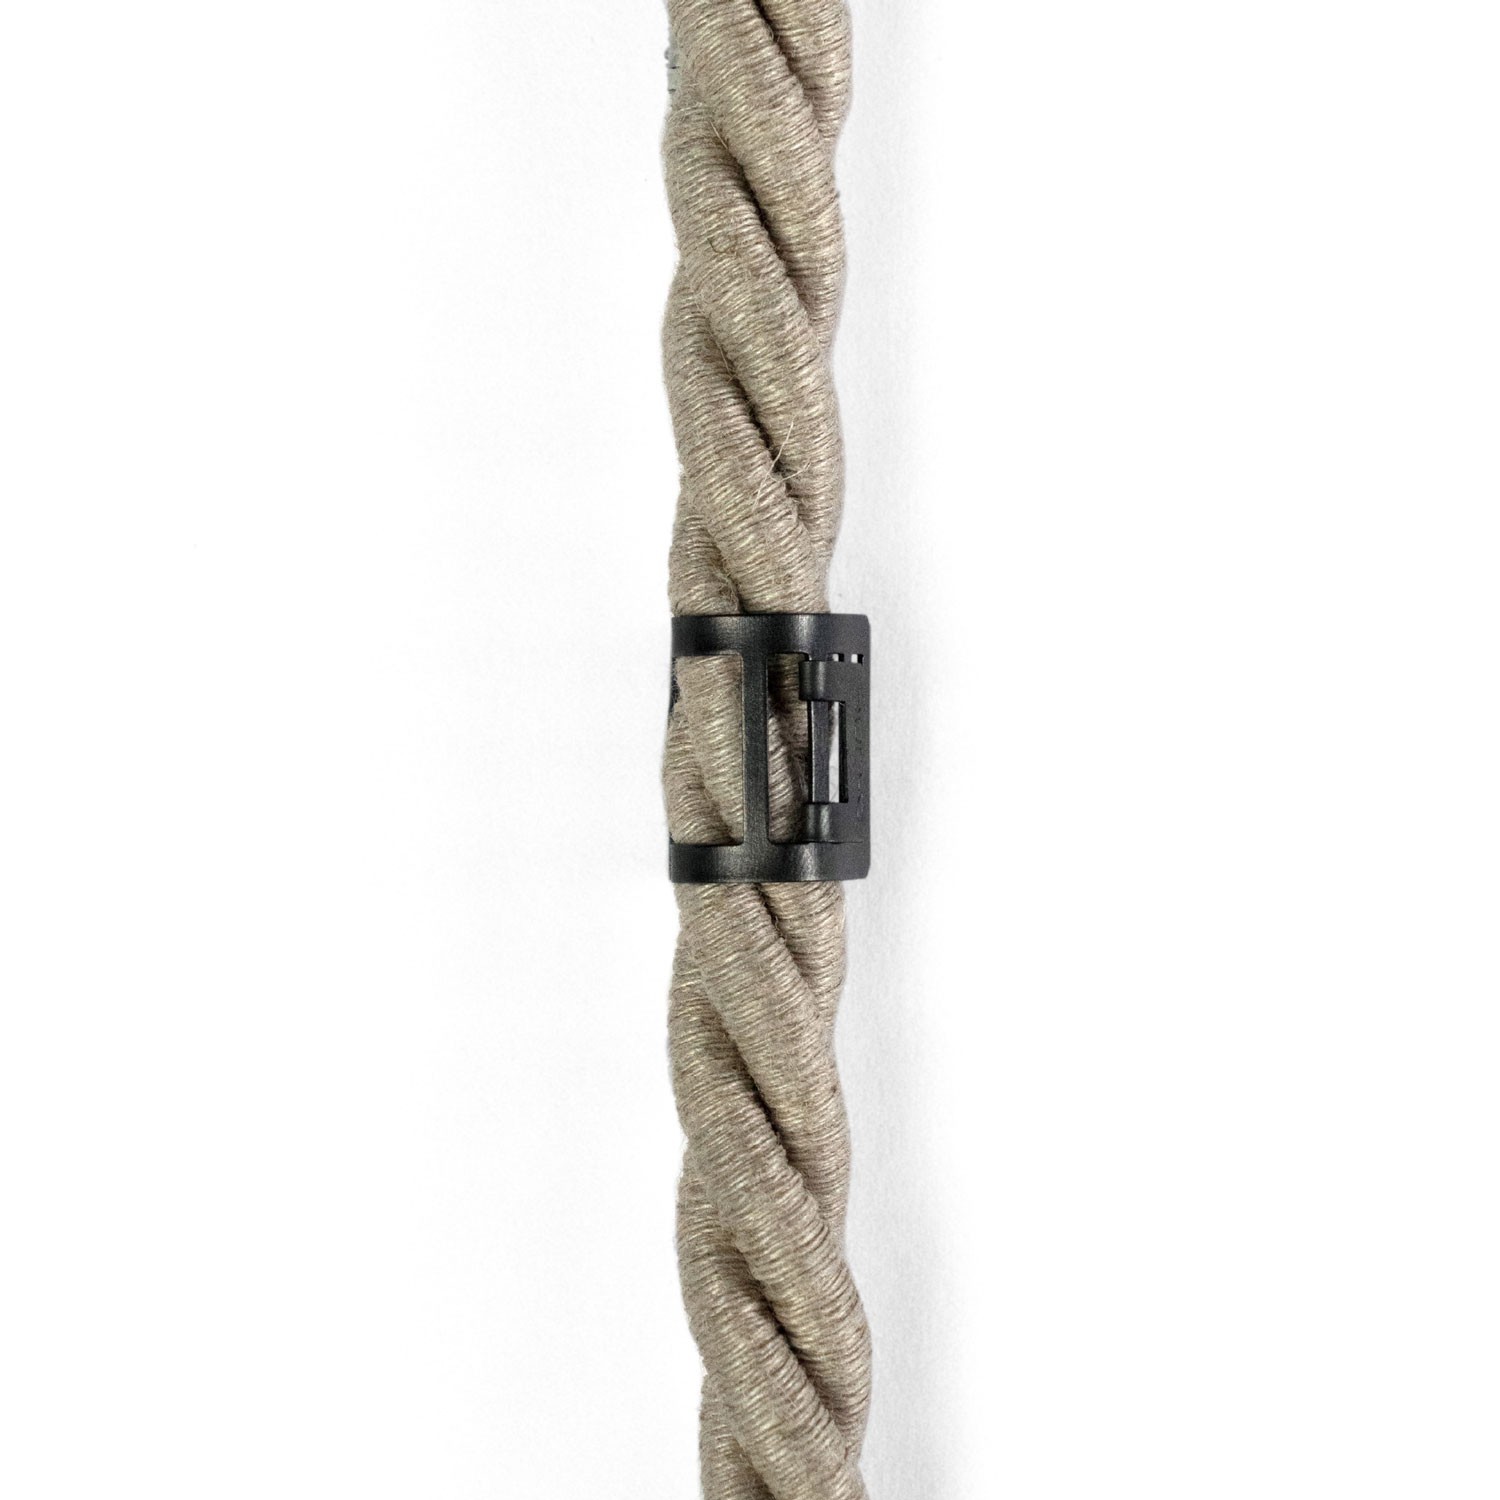 Clip fascetta passacavo in metallo per cordone 16 mm diametro